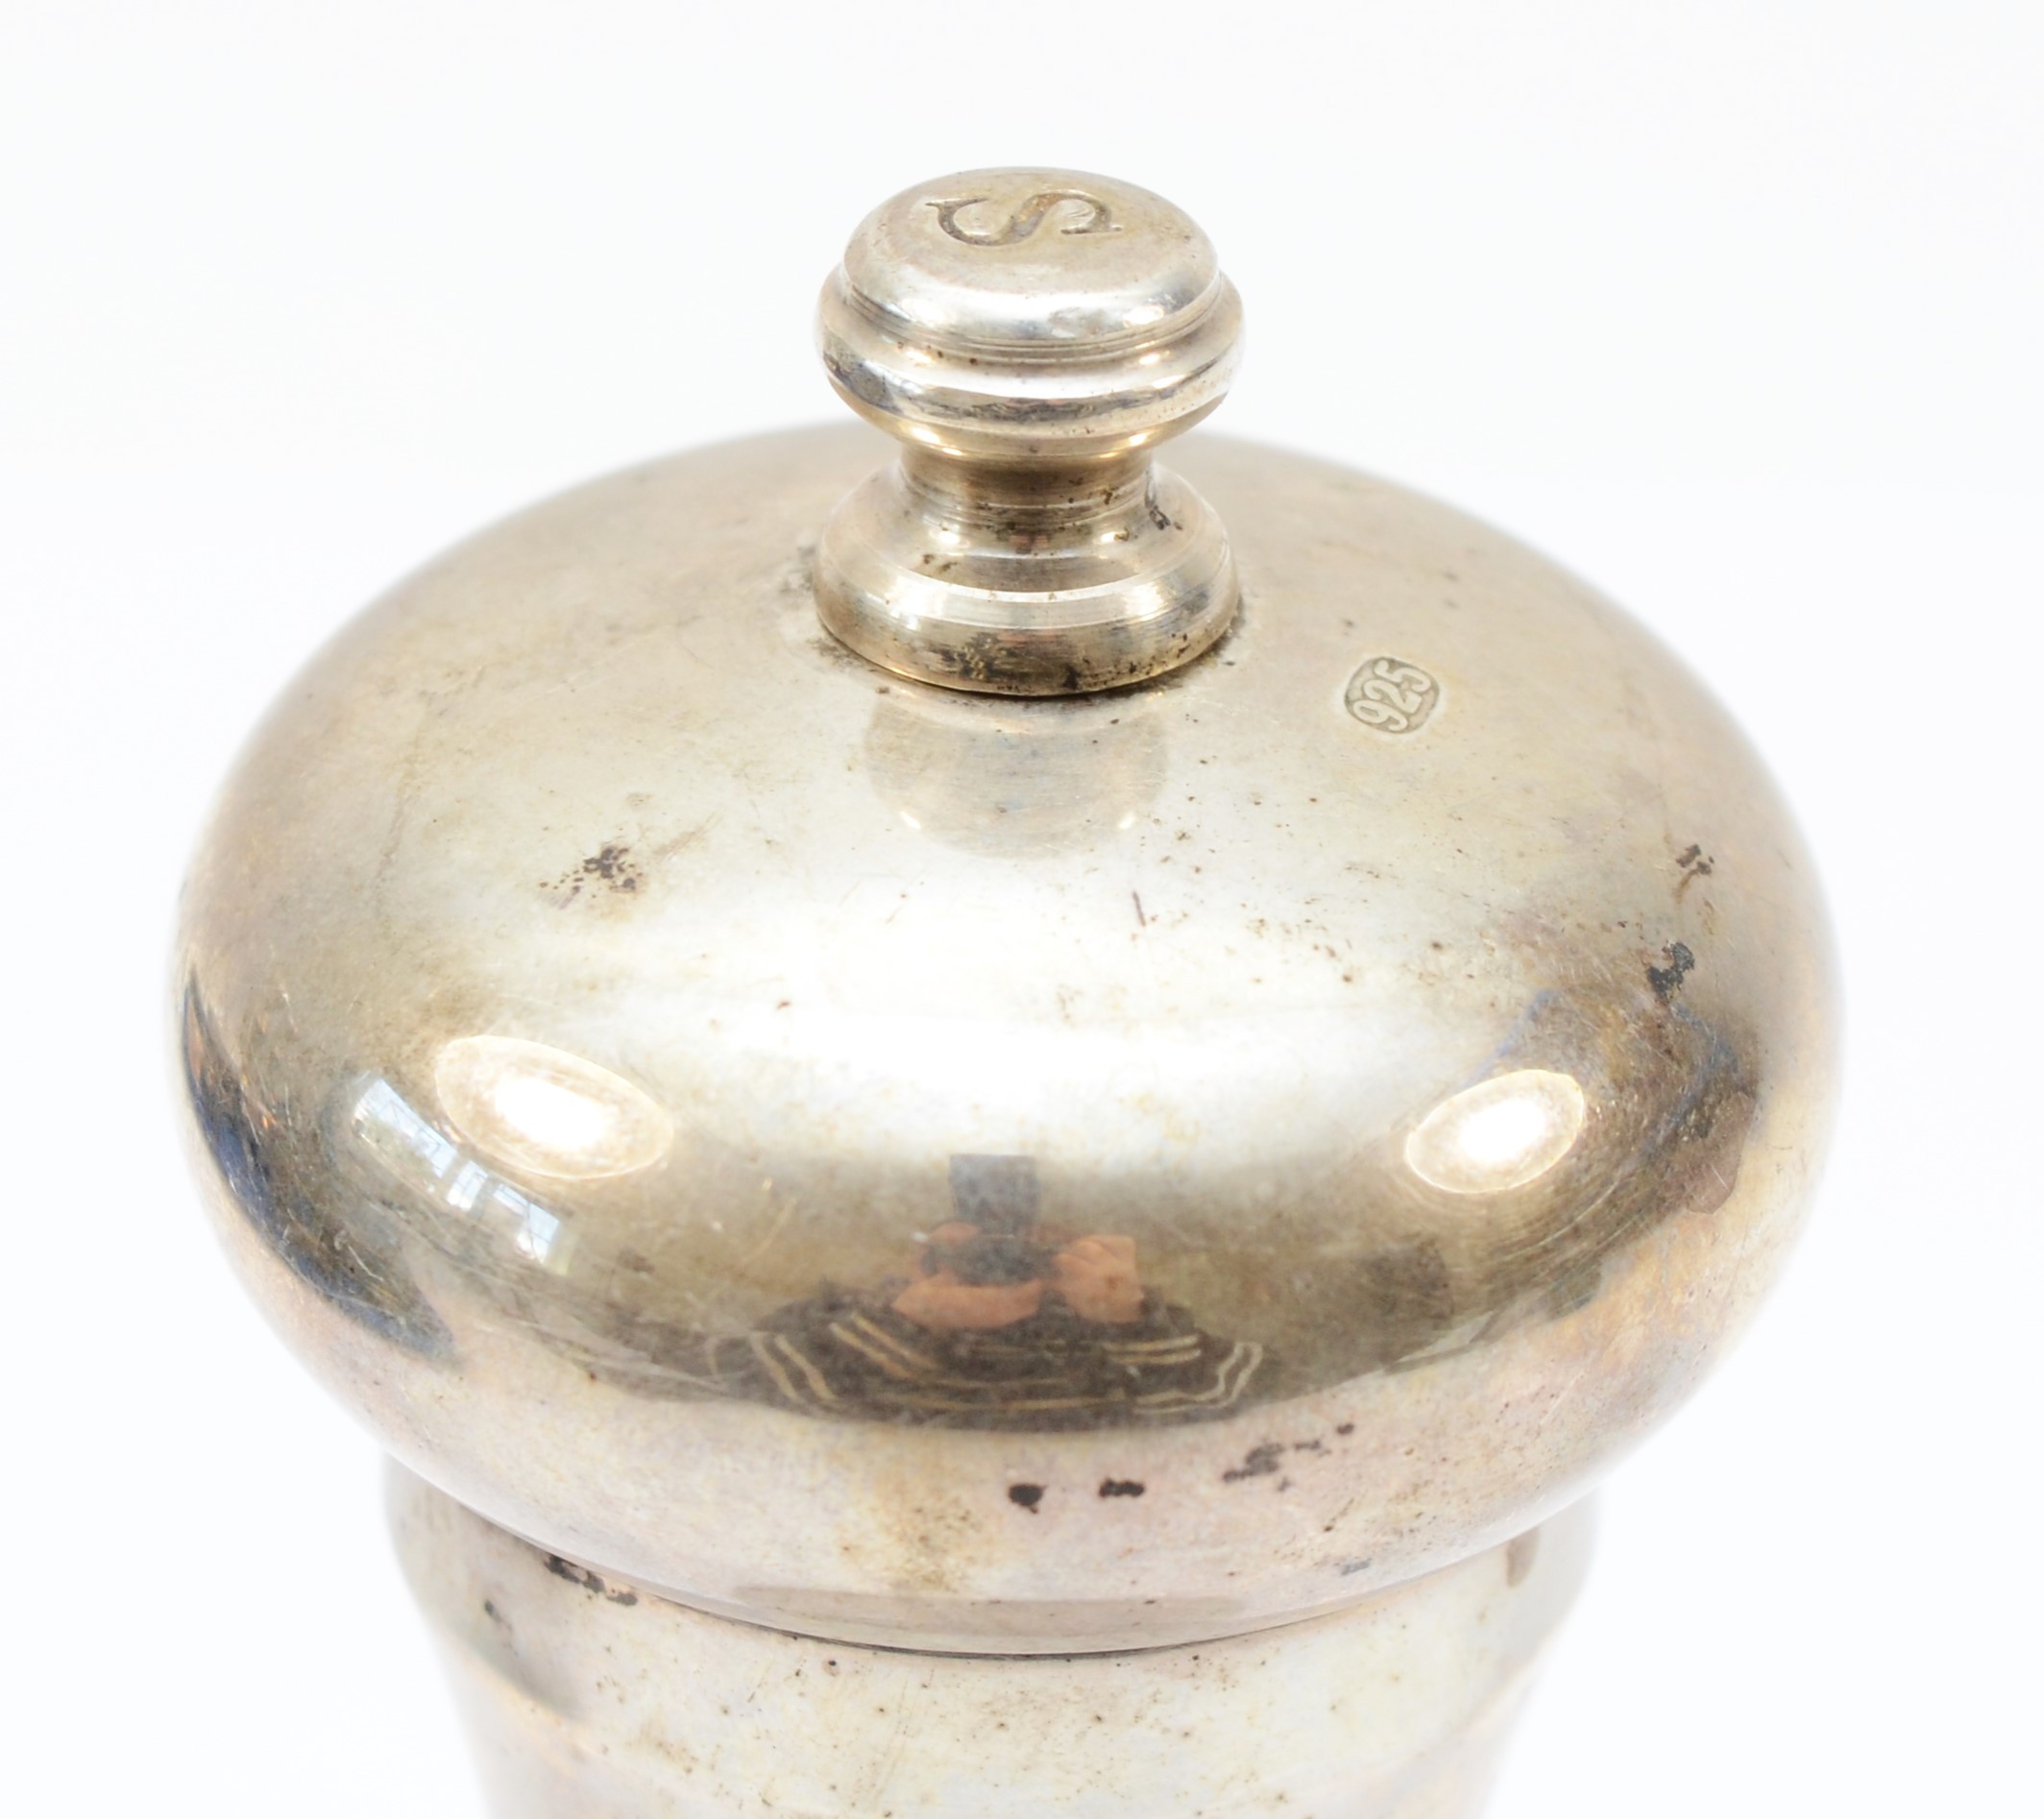 A silver salt grinder, London 2011, engraved S, 15.5cm - Image 3 of 3